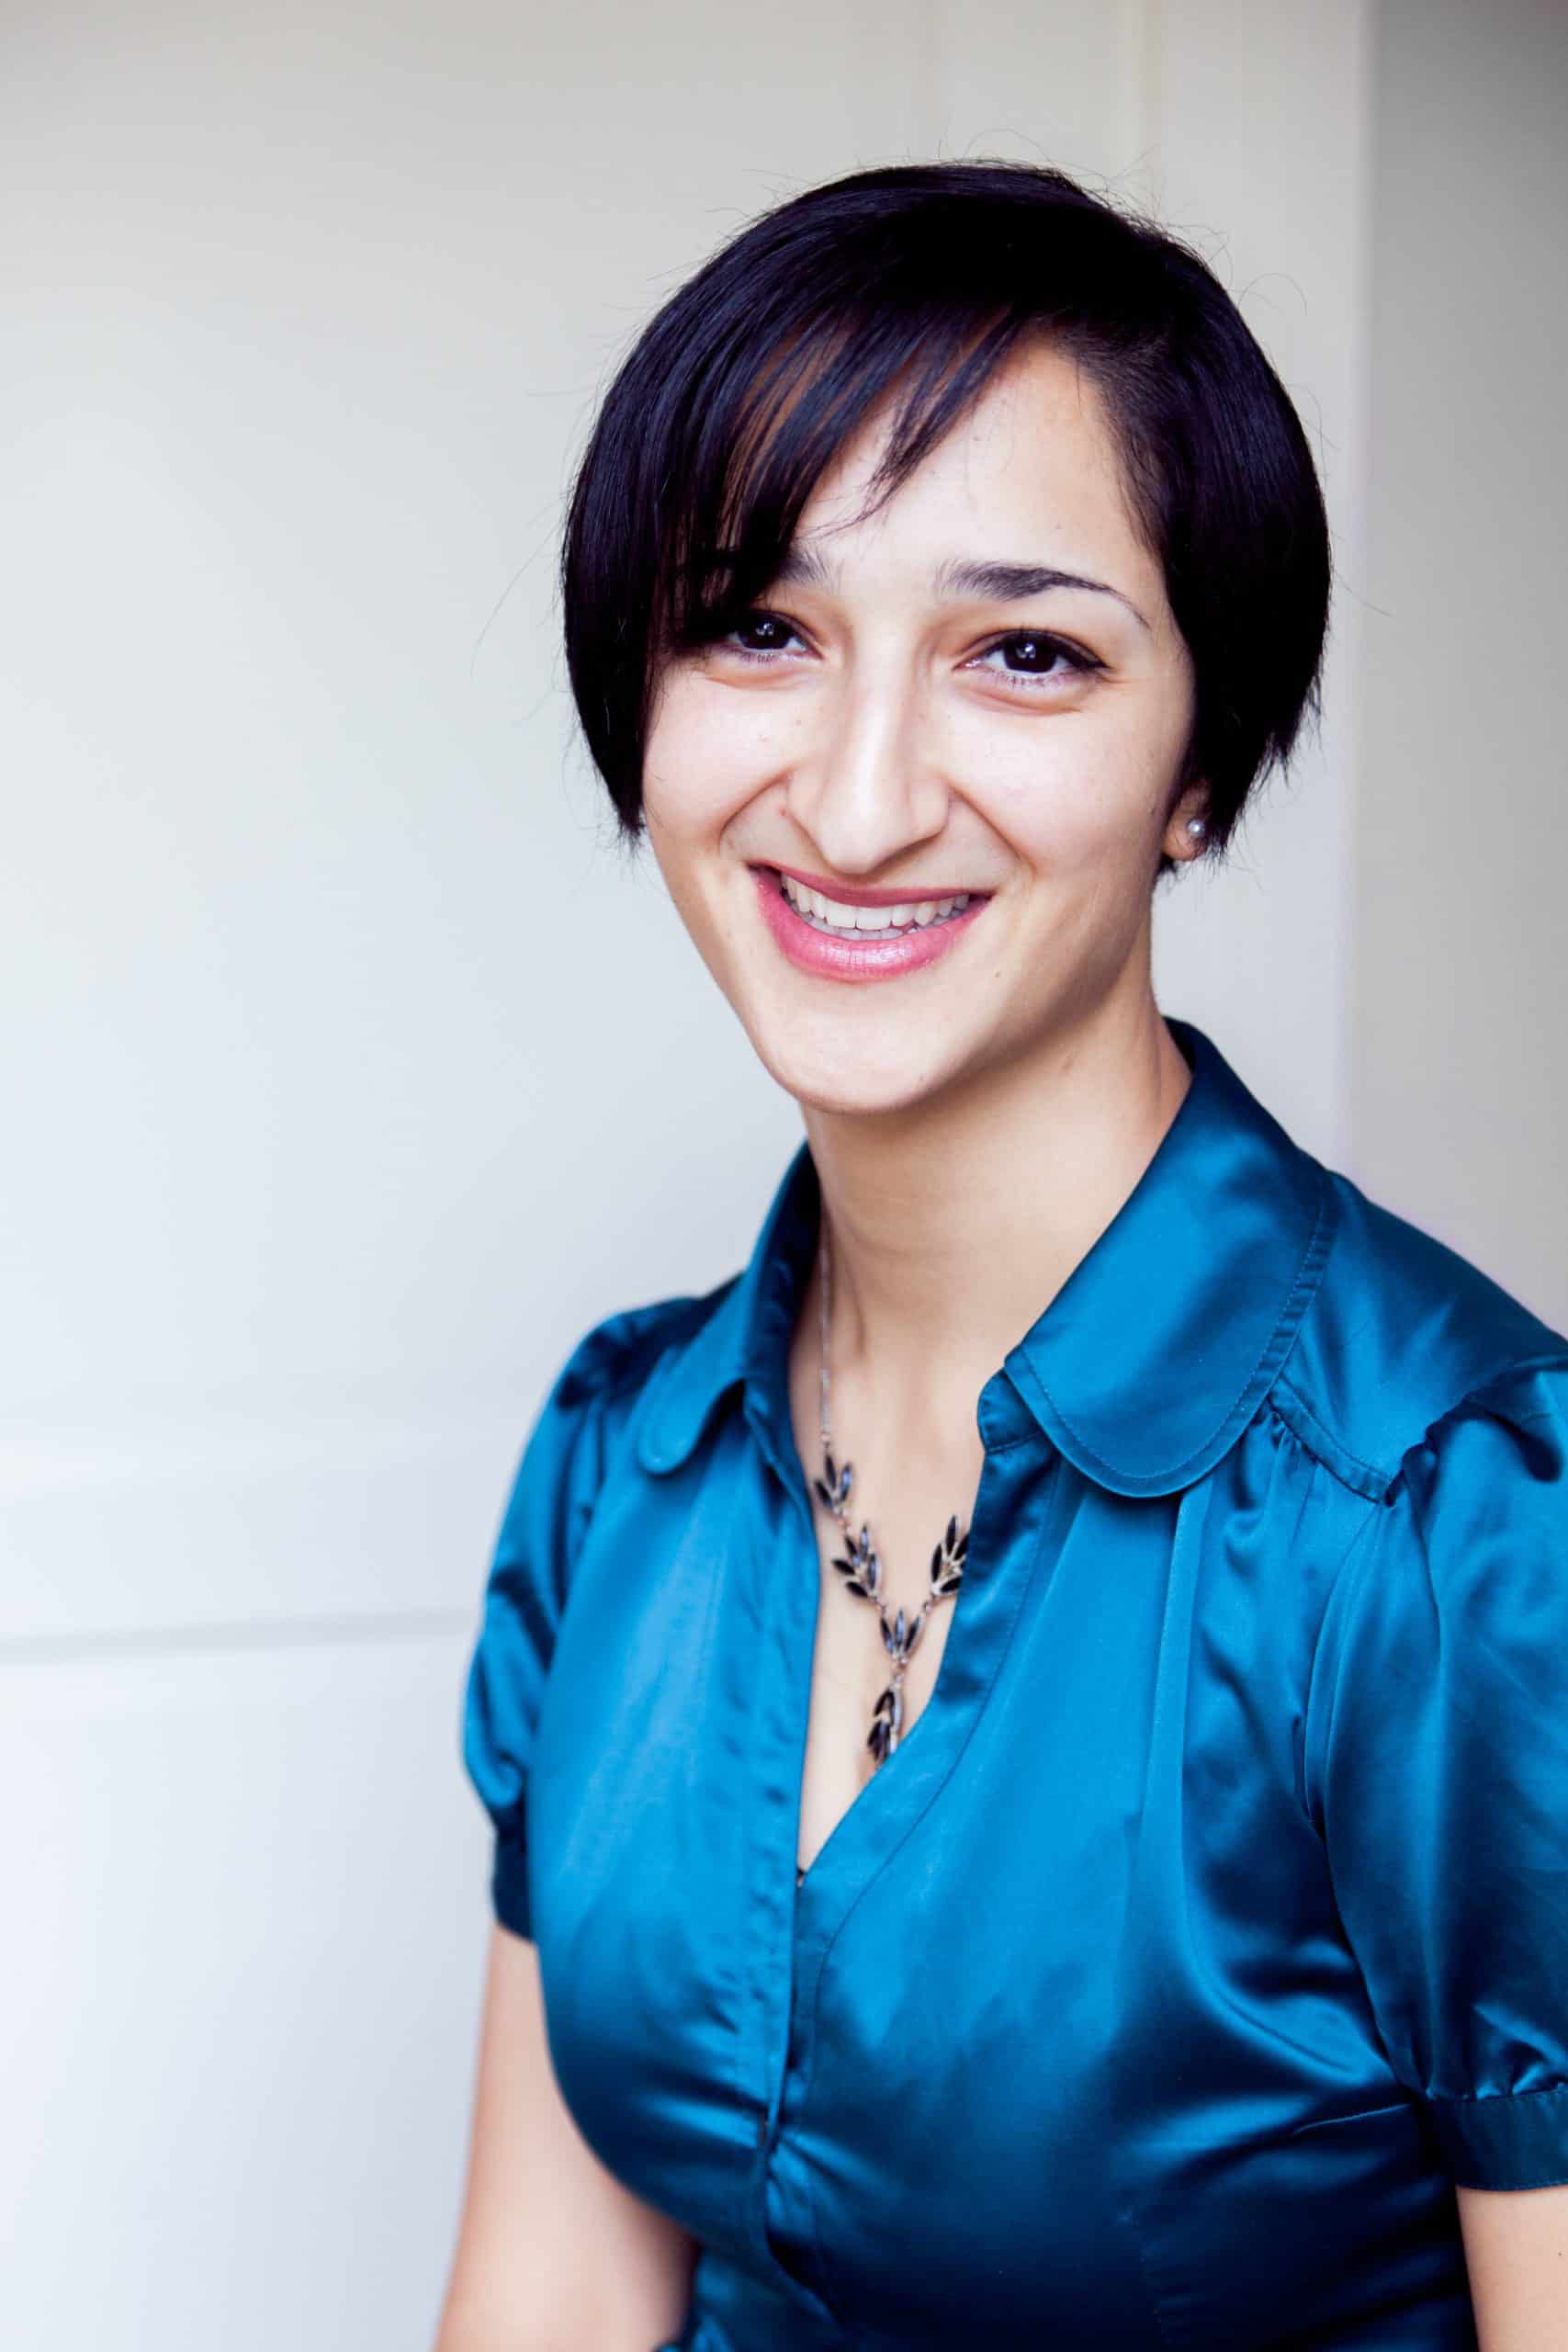 Samira Zaker Soltani